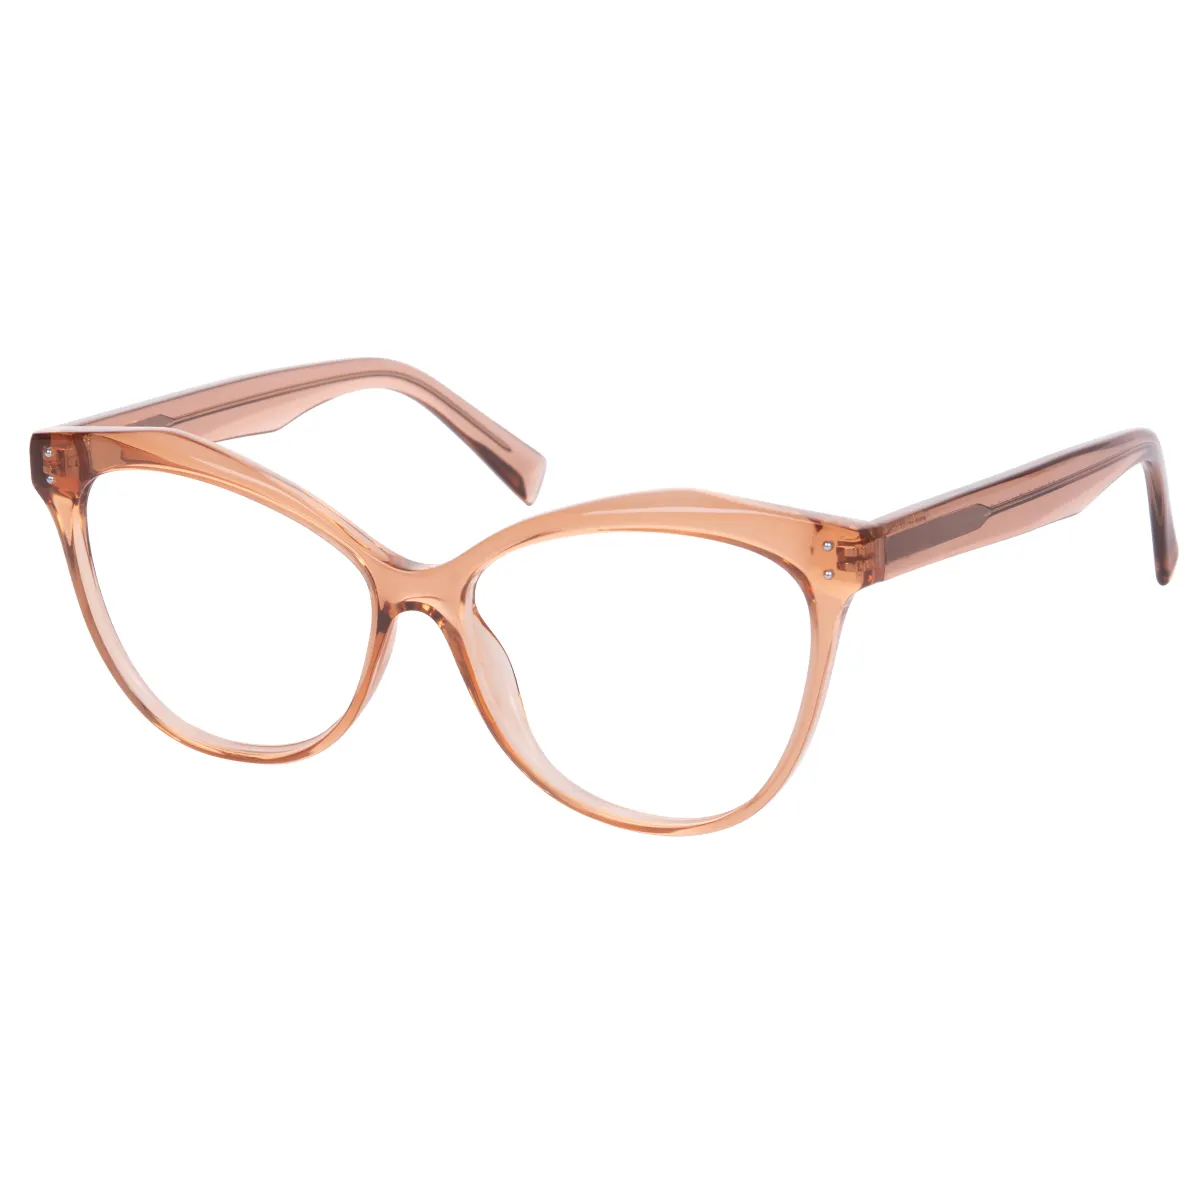 Granny - Cat-eye Brown Glasses for Women